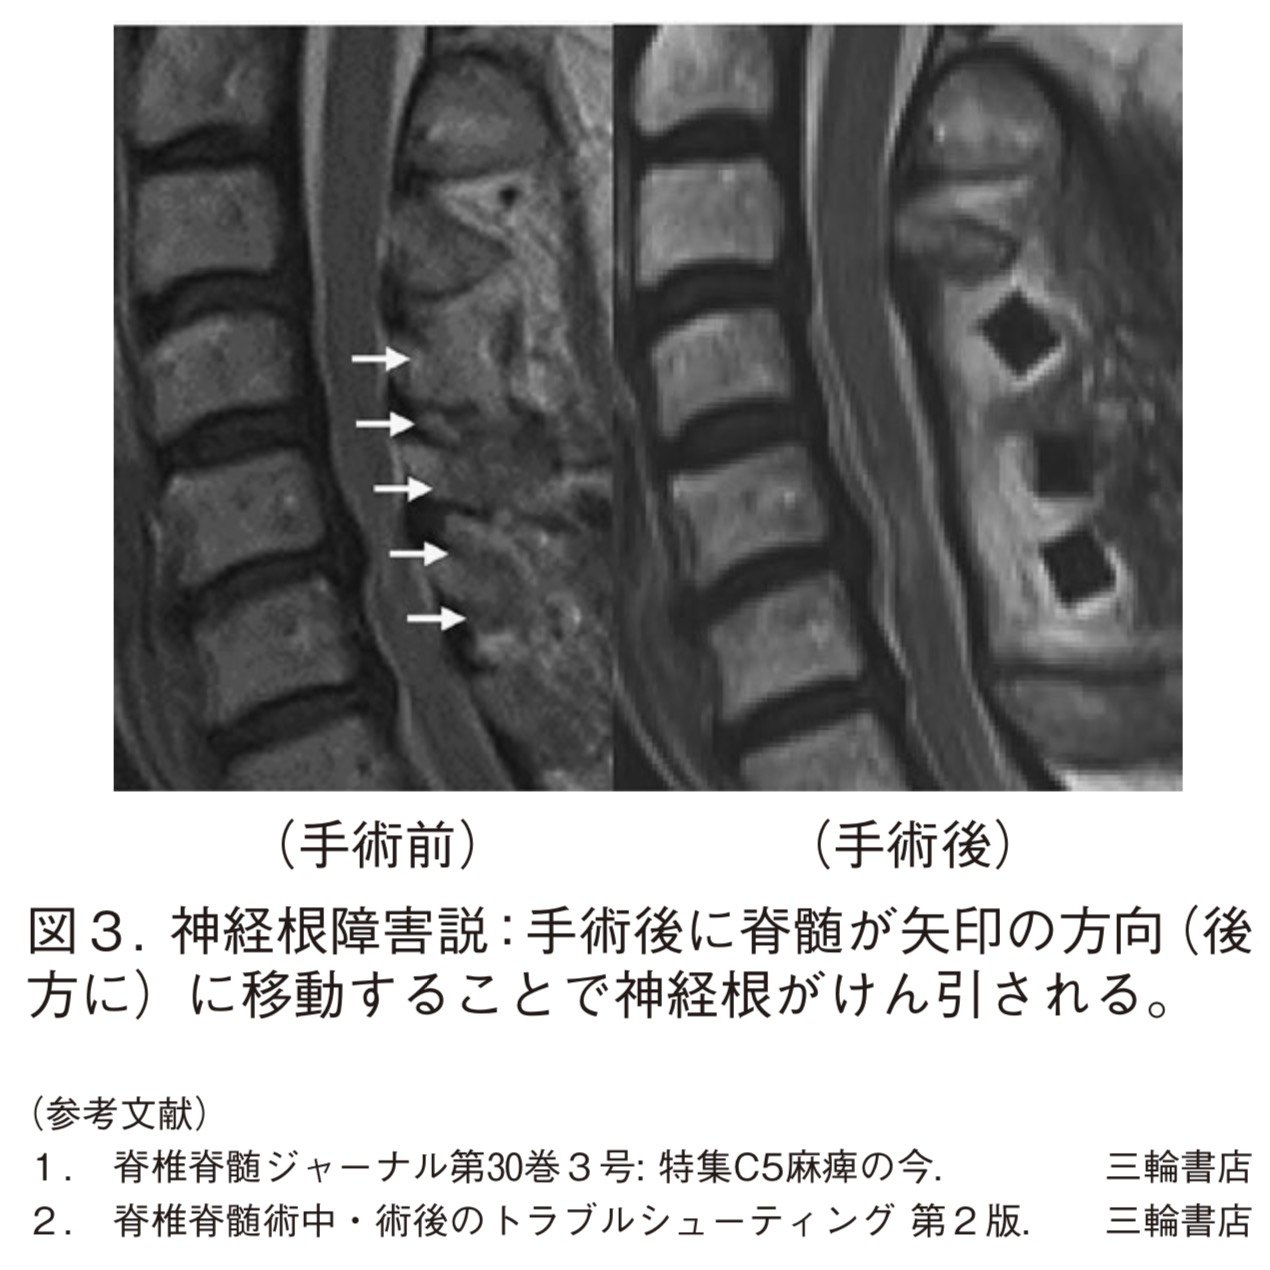 脊椎便り 第9号 | 佐賀大学医学部 整形外科学教室